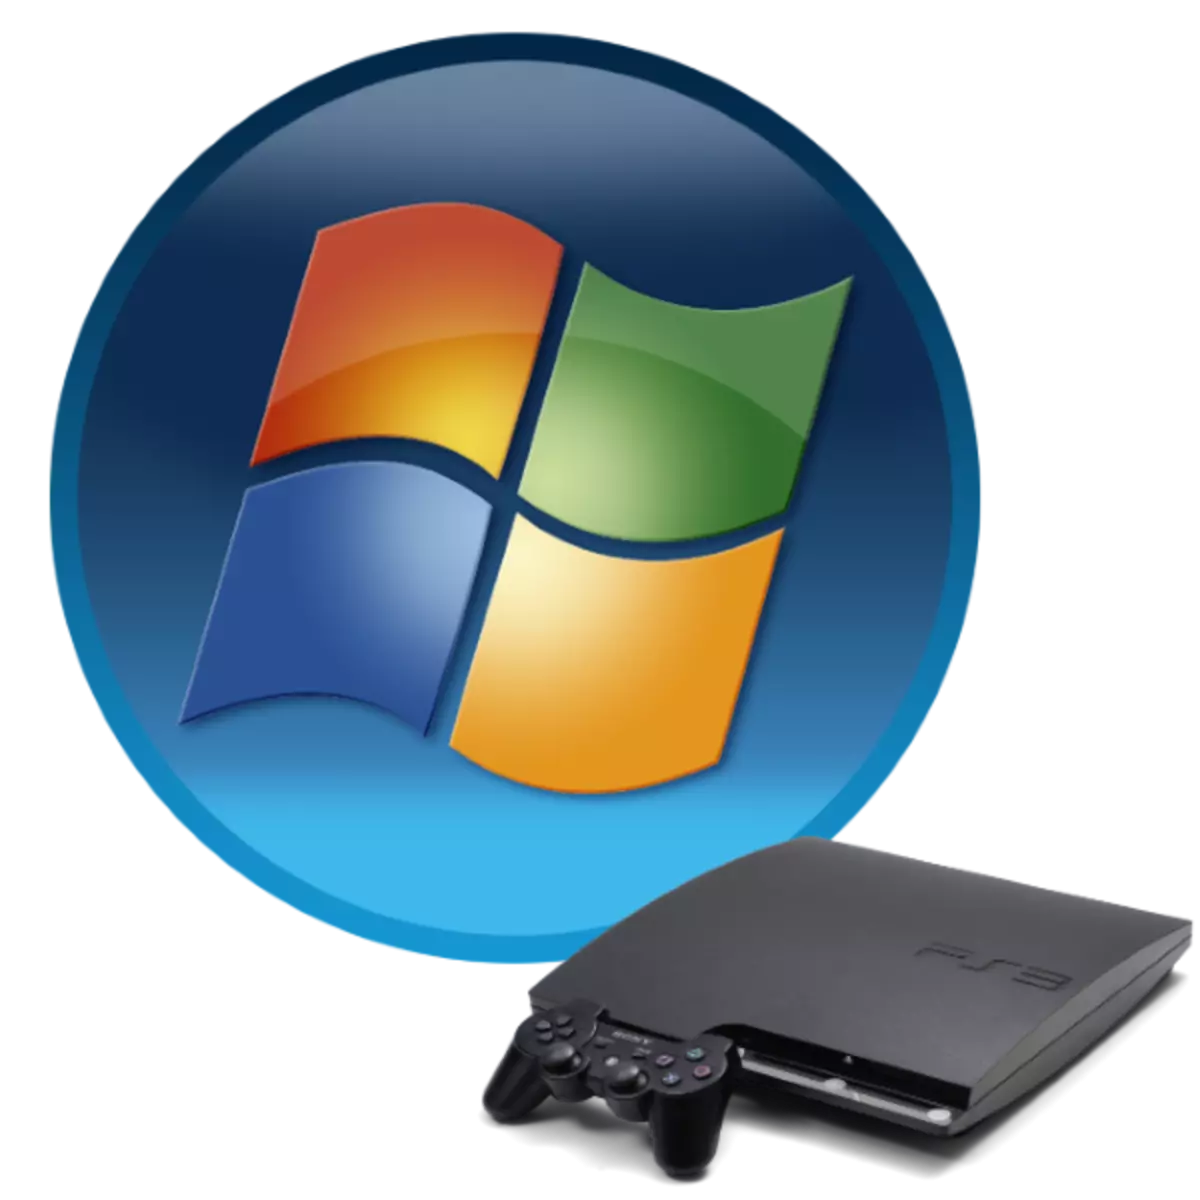 PS3 Emulators foar PC Windows 7